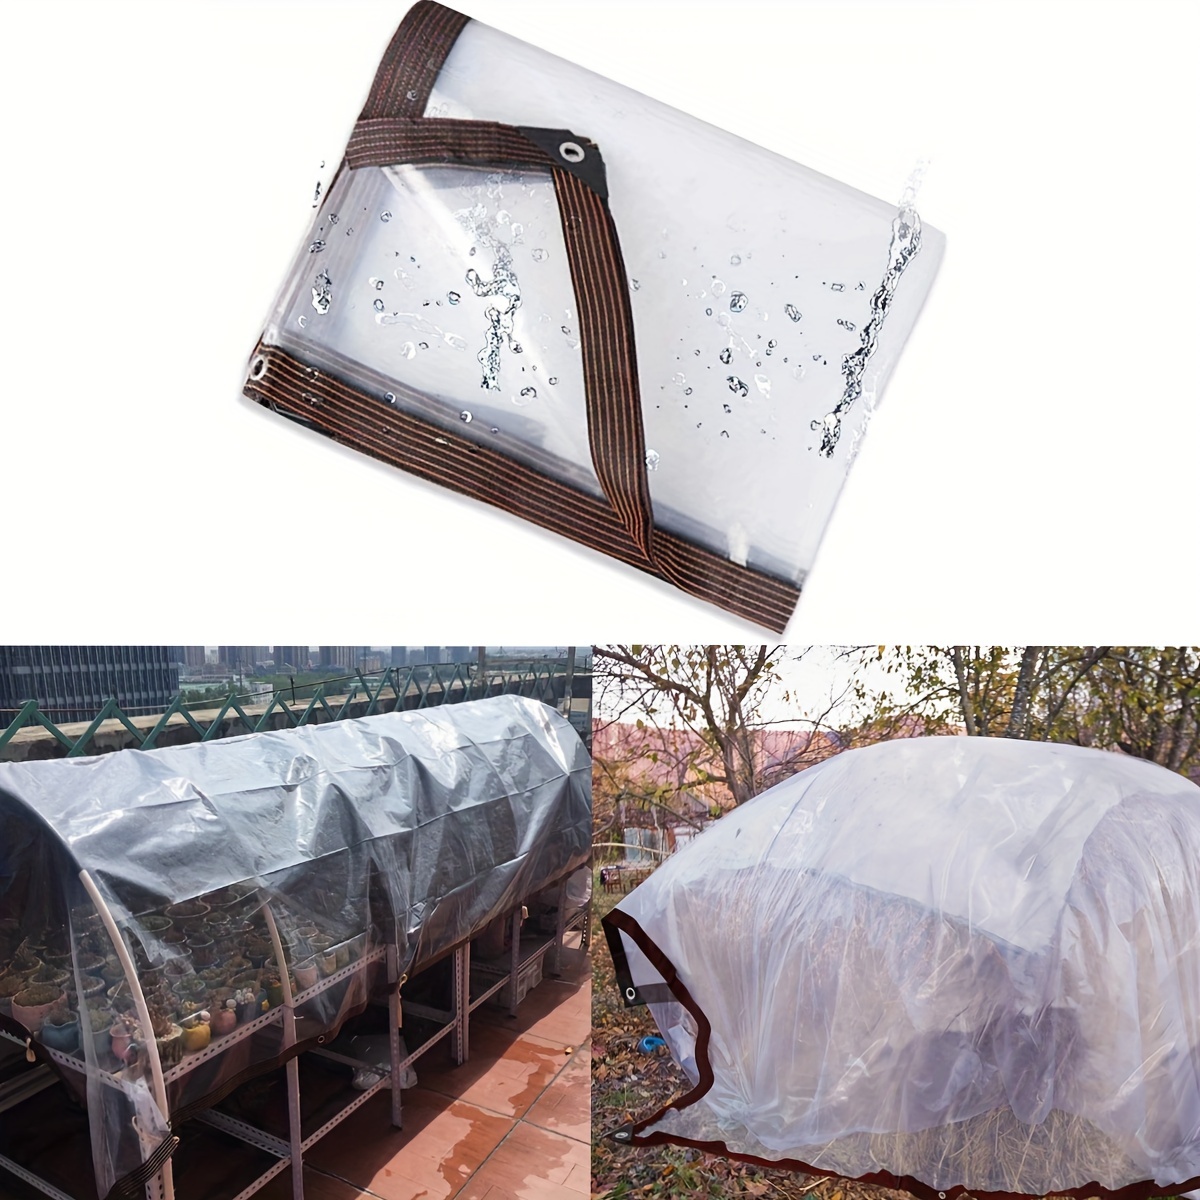 Cubierta para plantas U/D, lona de plástico transparente impermeable de  PVC, varios tamaños de lona transparente a prueba de lluvia con ojales,  toldo